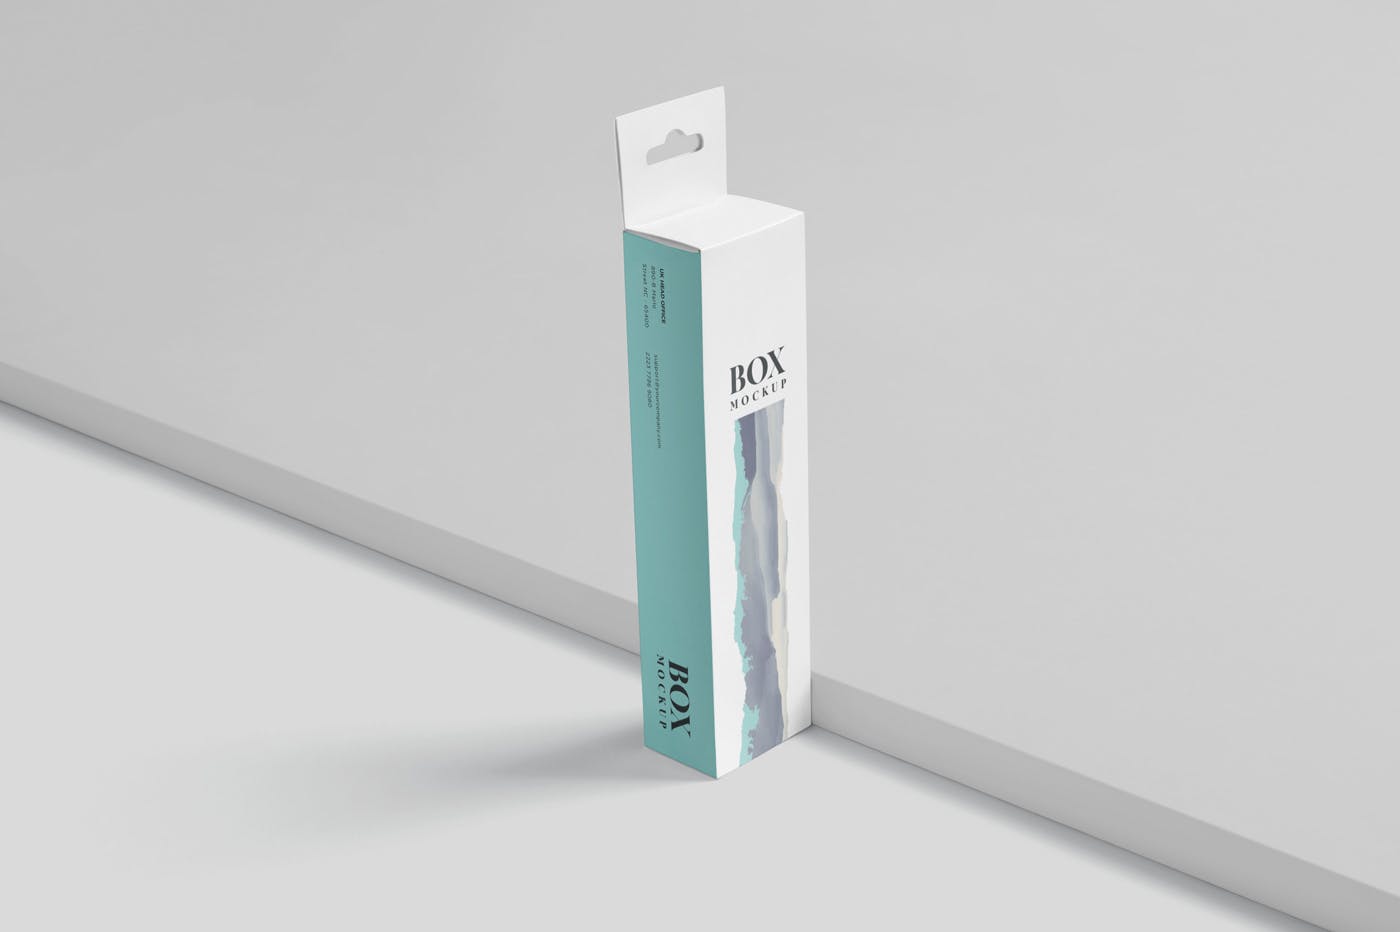 超薄矩形长条包装盒外观设计效果图第一素材精选 Box Mockup PSDs – High Slim Rectangle Size Hanger插图(2)